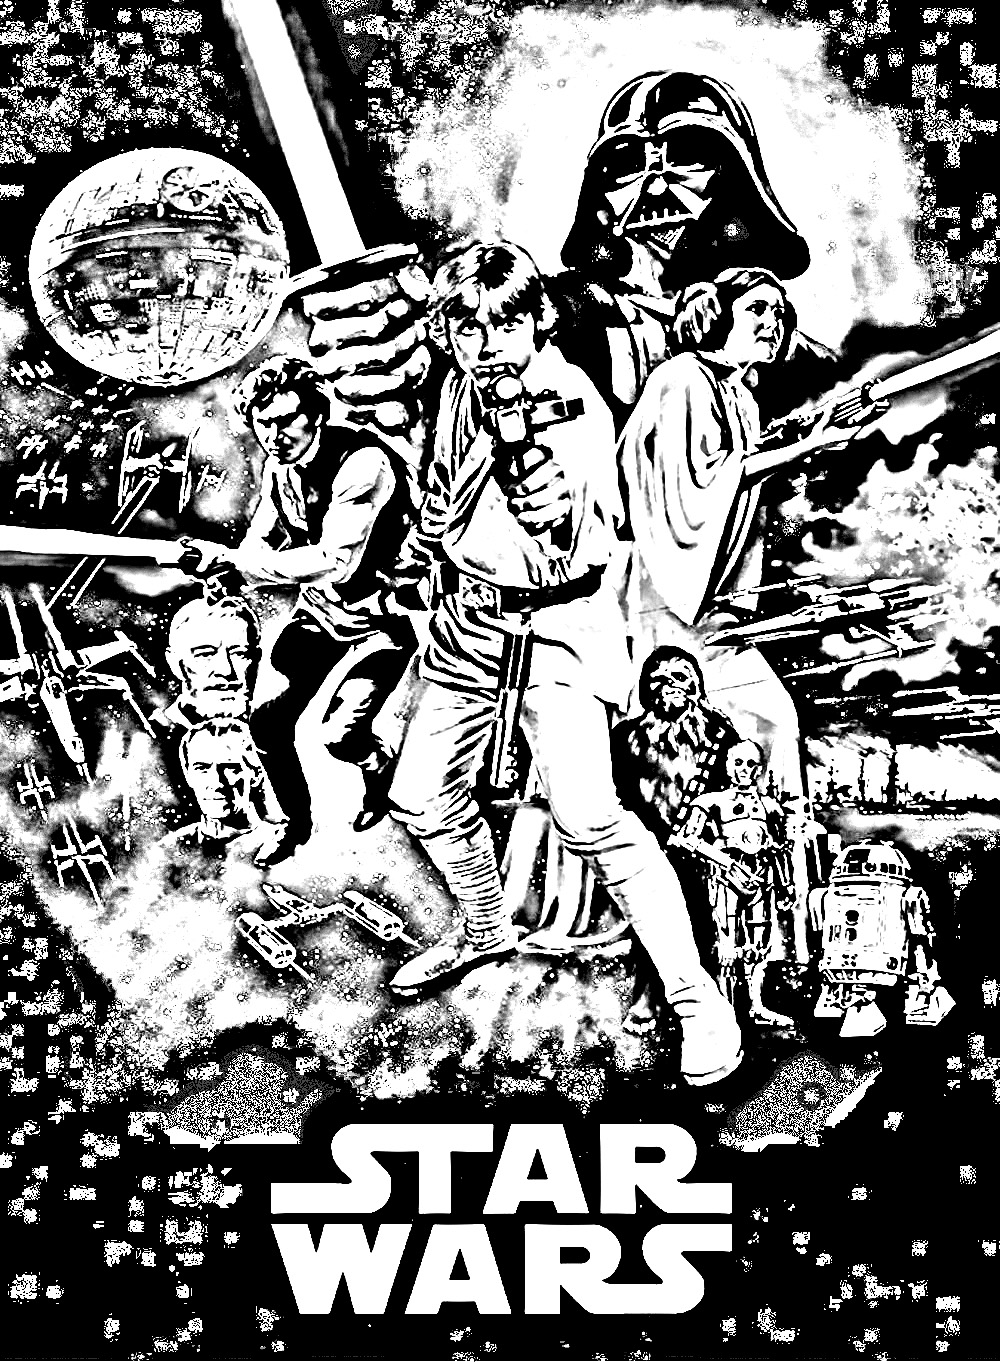 Pagina da colorare con la locandina del film Star Wars Episodio IV. Star Wars: Episodio IV - Una nuova speranza (Star Wars) è un film diretto da George Lucas con Mark Hamill e Harrison Ford. È uscito nelle sale cinematografiche nel 1977.